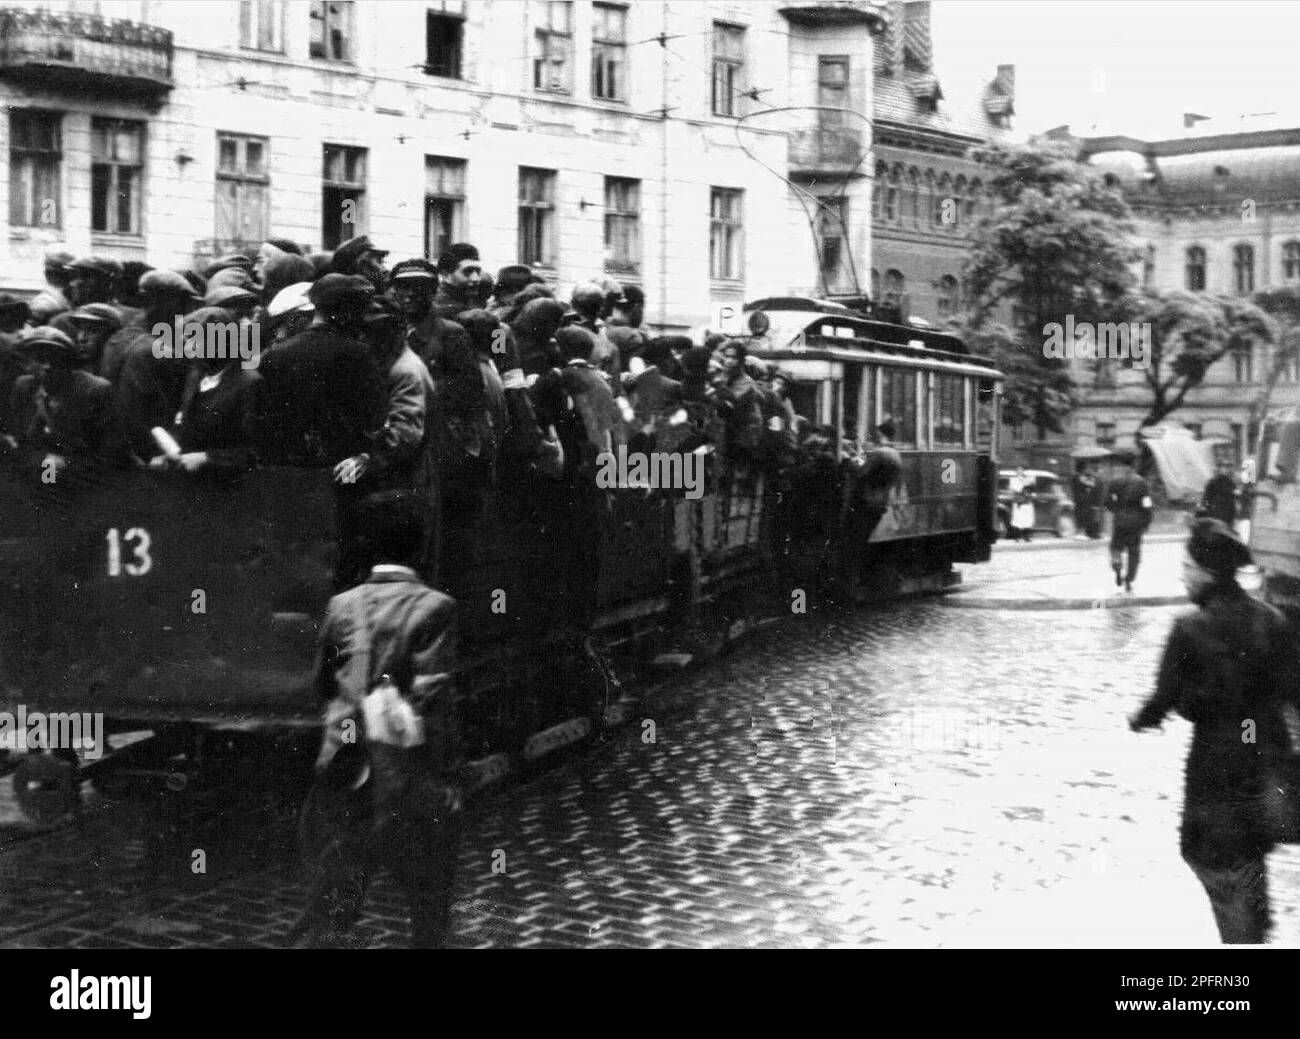 Nelle prime fasi del WW2 gli ebrei dell'europa occupata dai nazisti furono arrotondati e costretti a diventare ghetti affollati. Quando fu presa la decisione di ucciderli tutti furono deportati in centri di sterminio per essere assassinati. Questa immagine mostra gli ebrei che ritornano al Ghetto di Varsavia impacchettati su un treno dopo il lavoro. Foto Stock